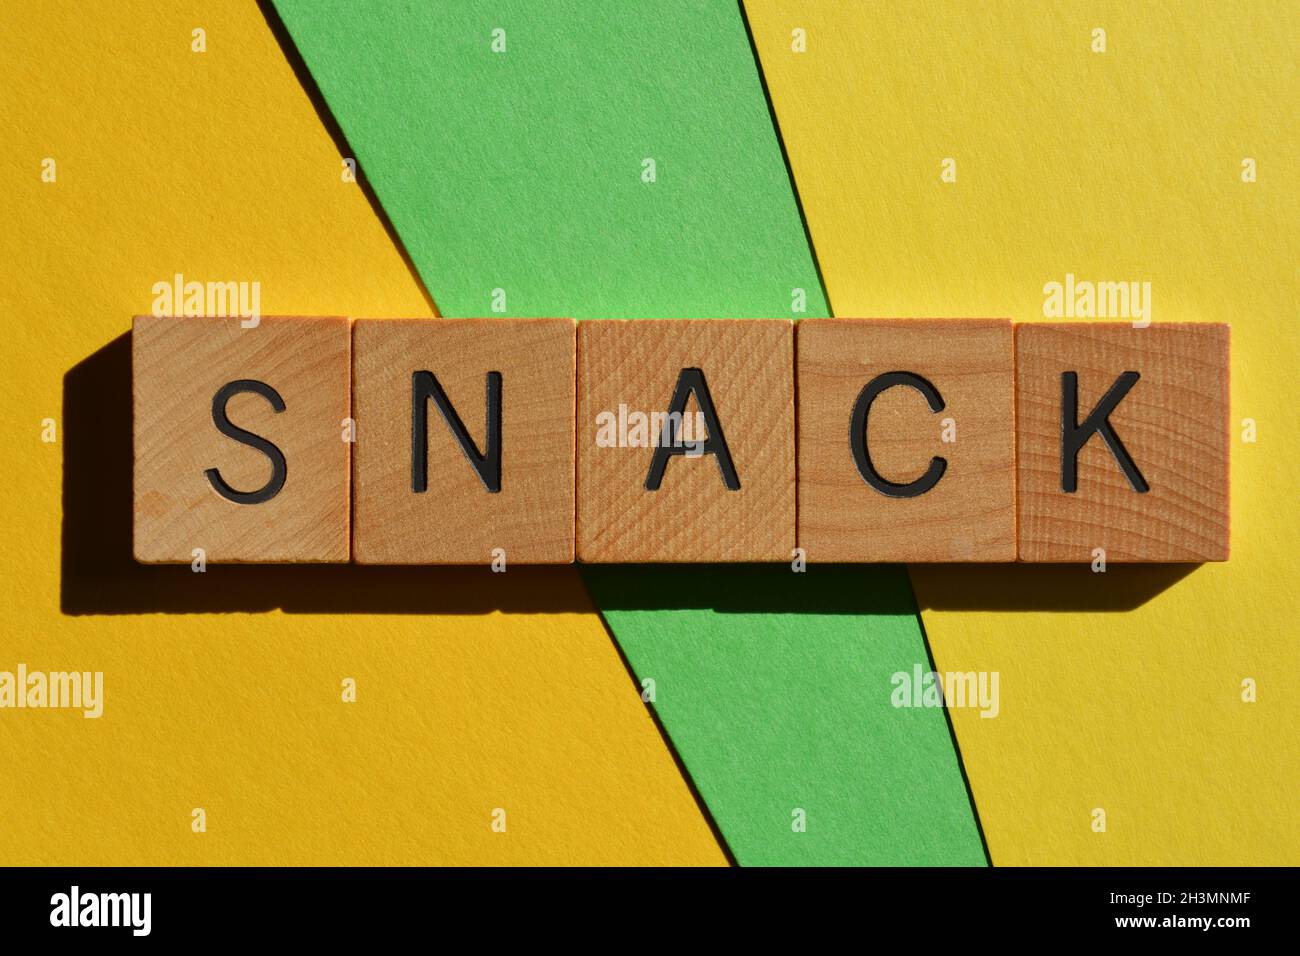 Snack, parola in lettere di legno alfabeto, una parola di generazione Z slang usata per descrivere qualcuno che è bello Foto Stock